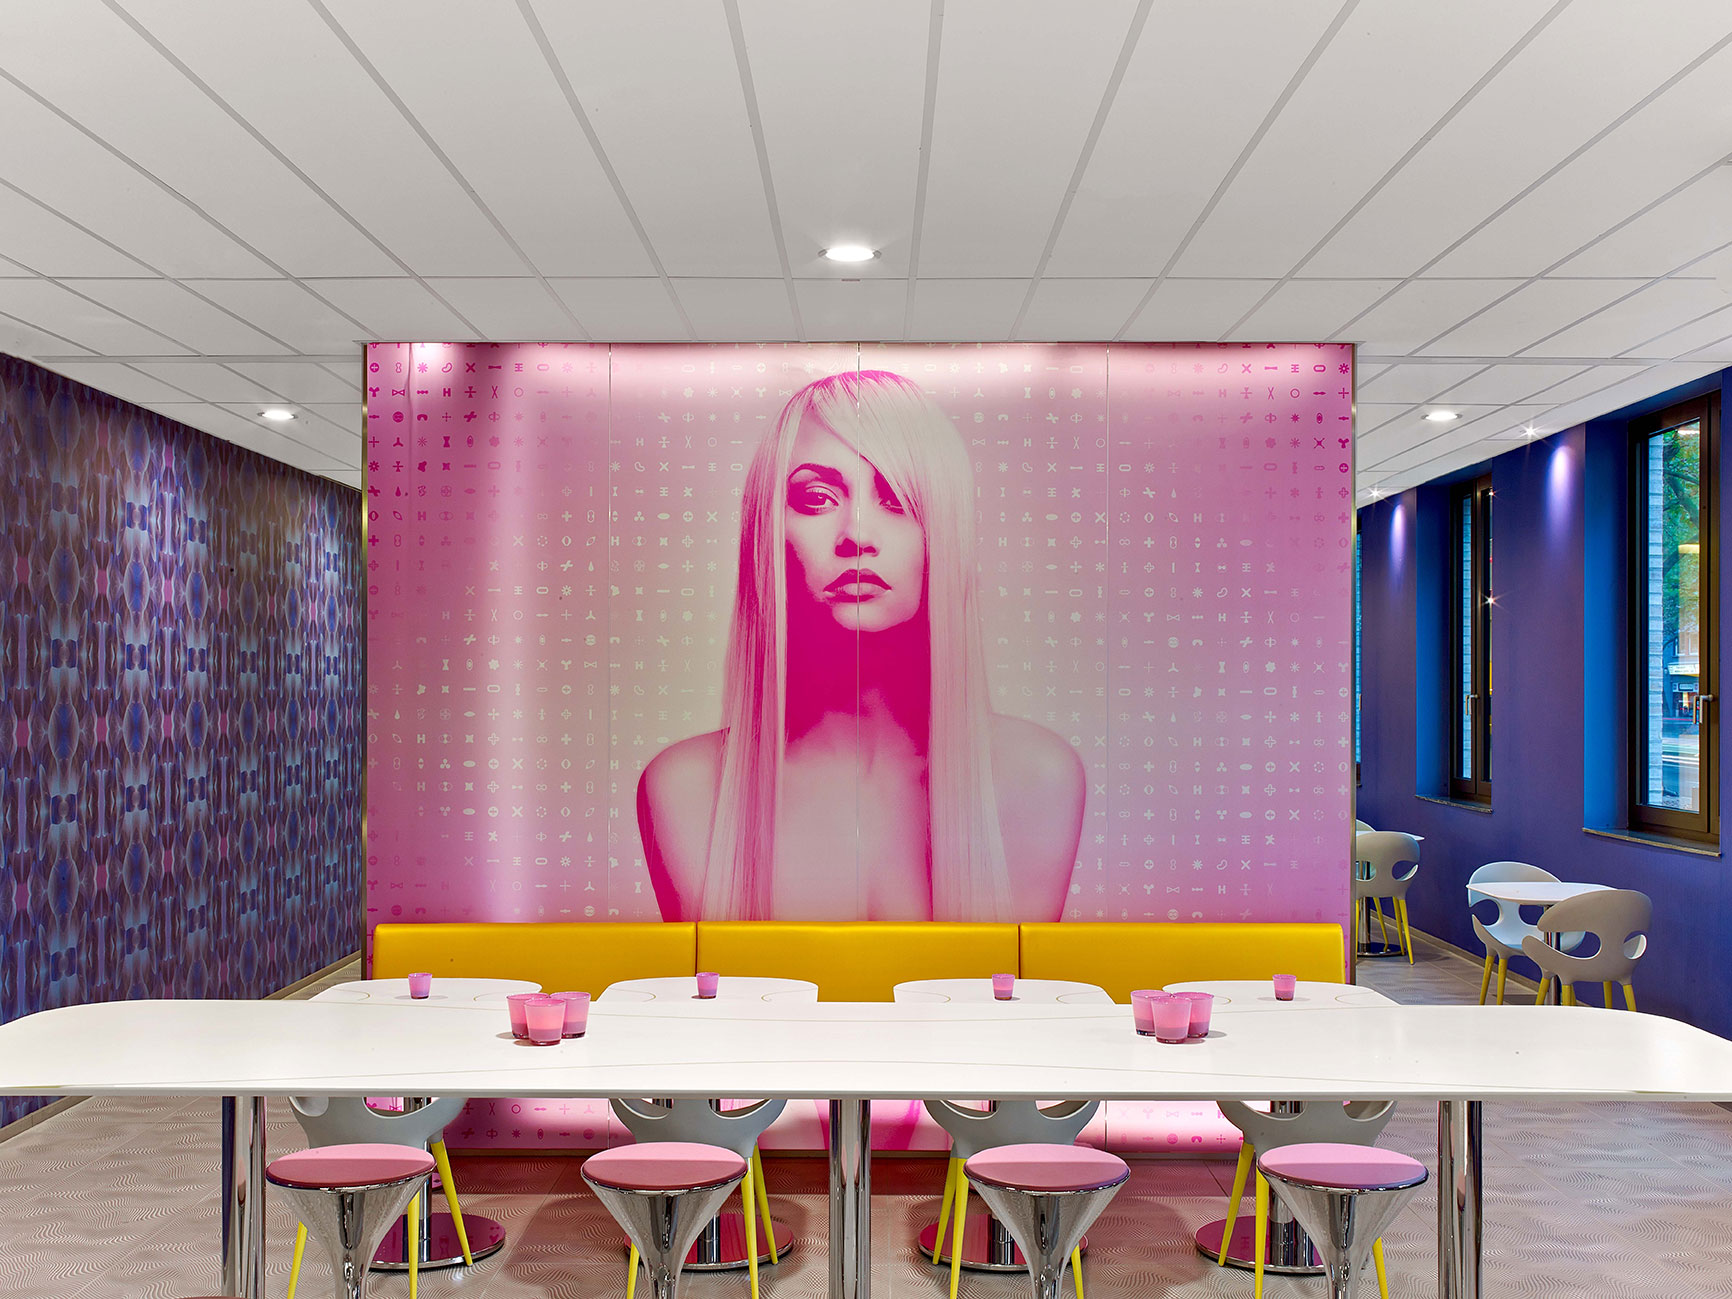 Lobby des Designhotels mit einer großen Fotografie einer blonden Frau